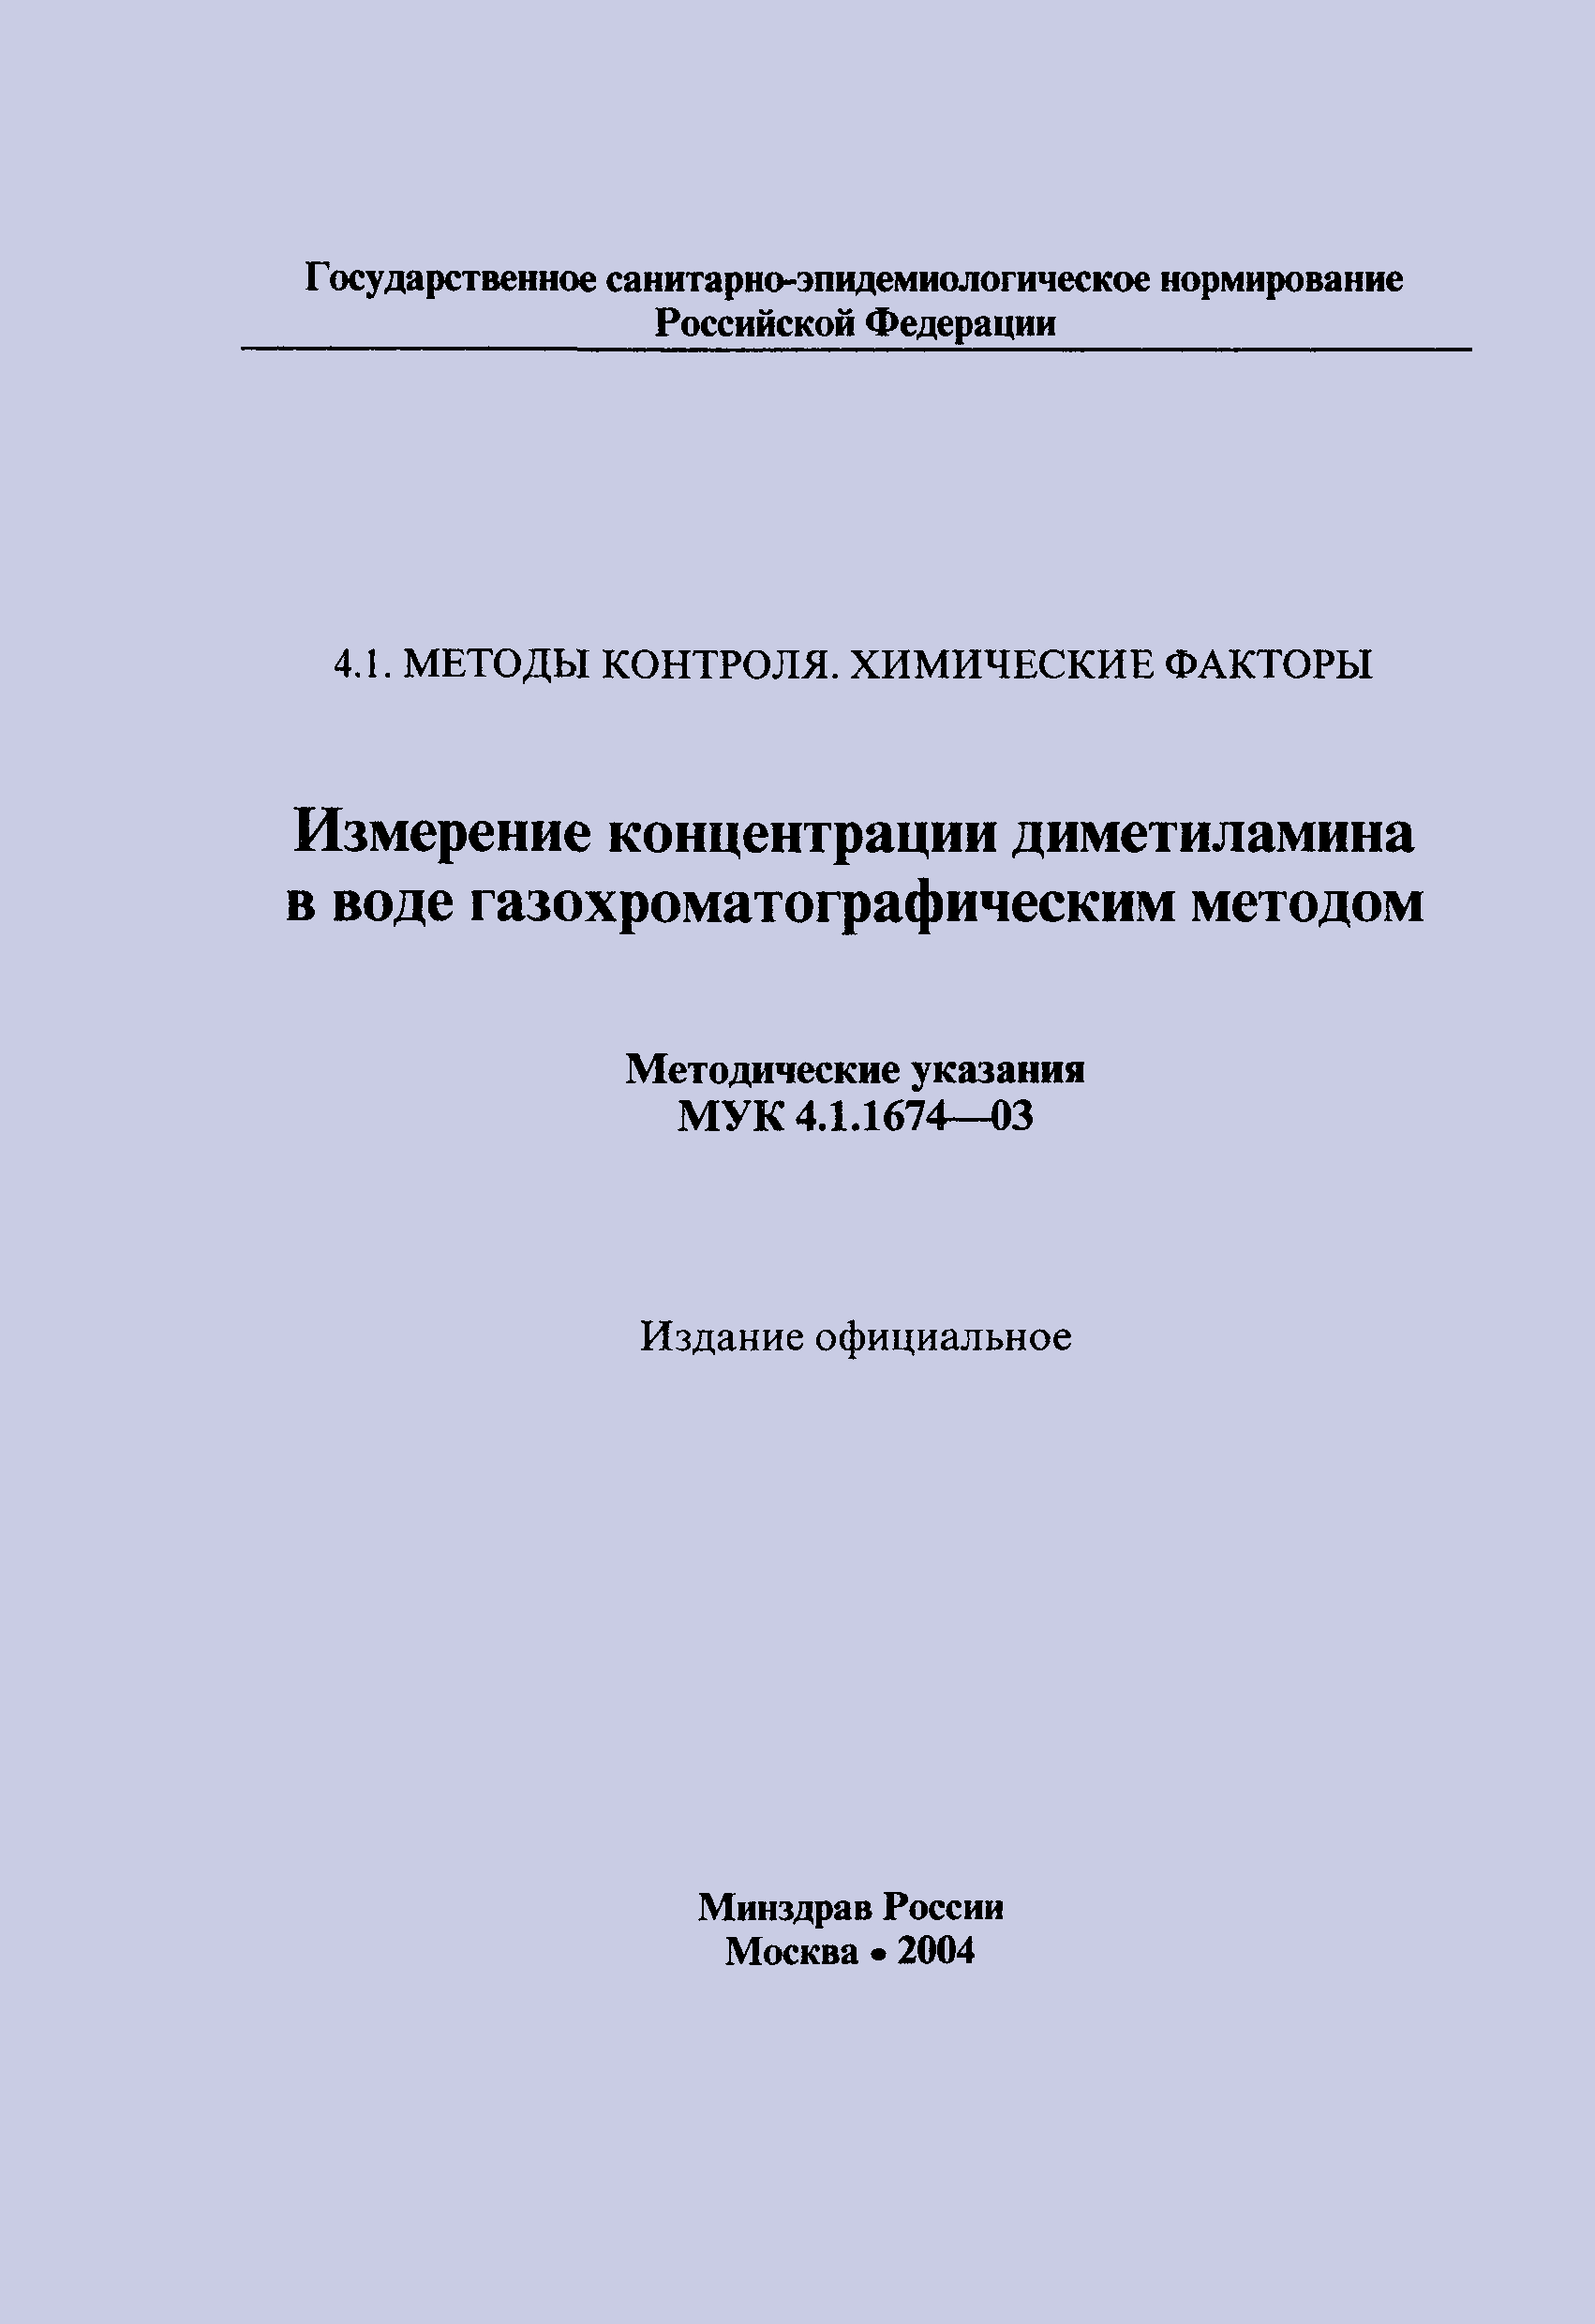 МУК 4.1.1674-03